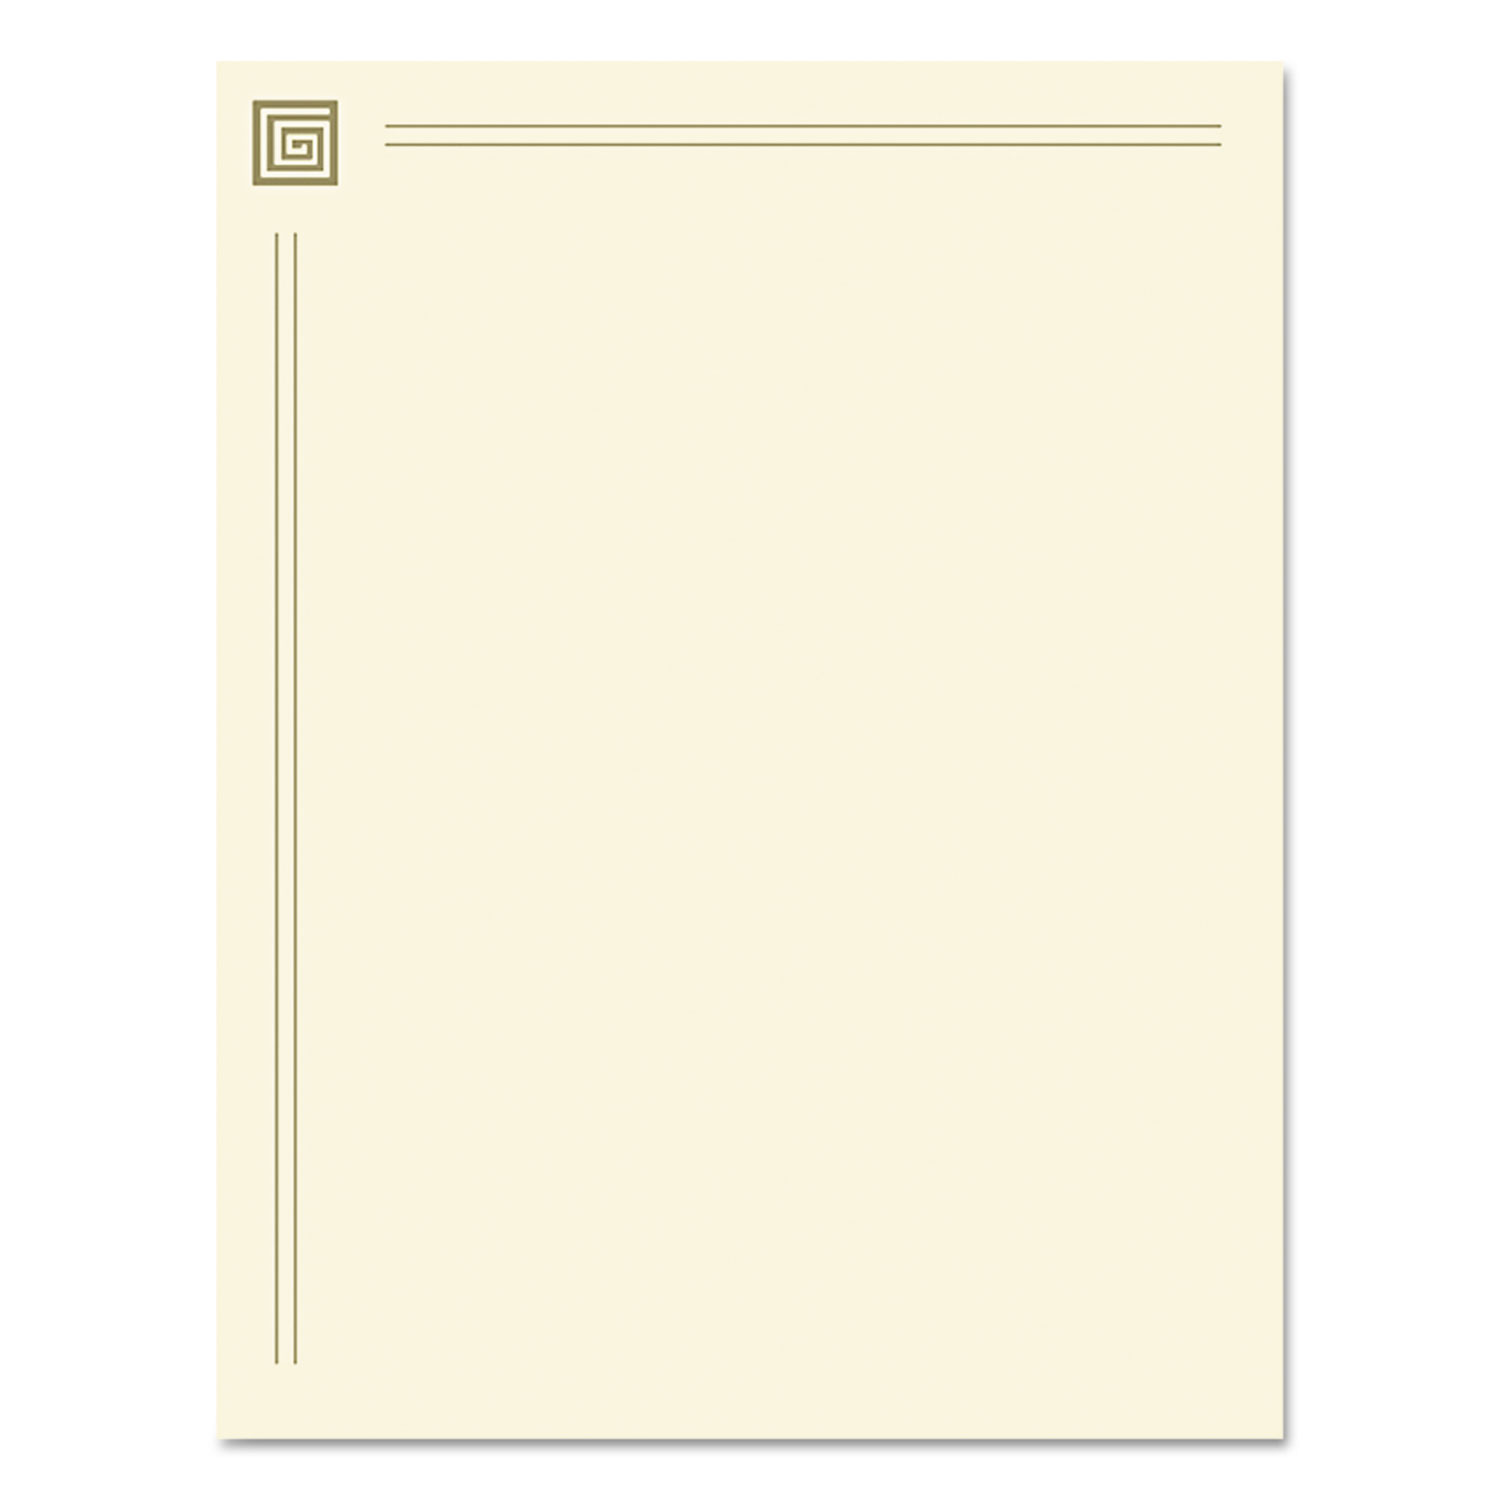 Design Suite Paper, 28 lbs., 8 1/2 x 11, Gold Foil, 40 Sheets